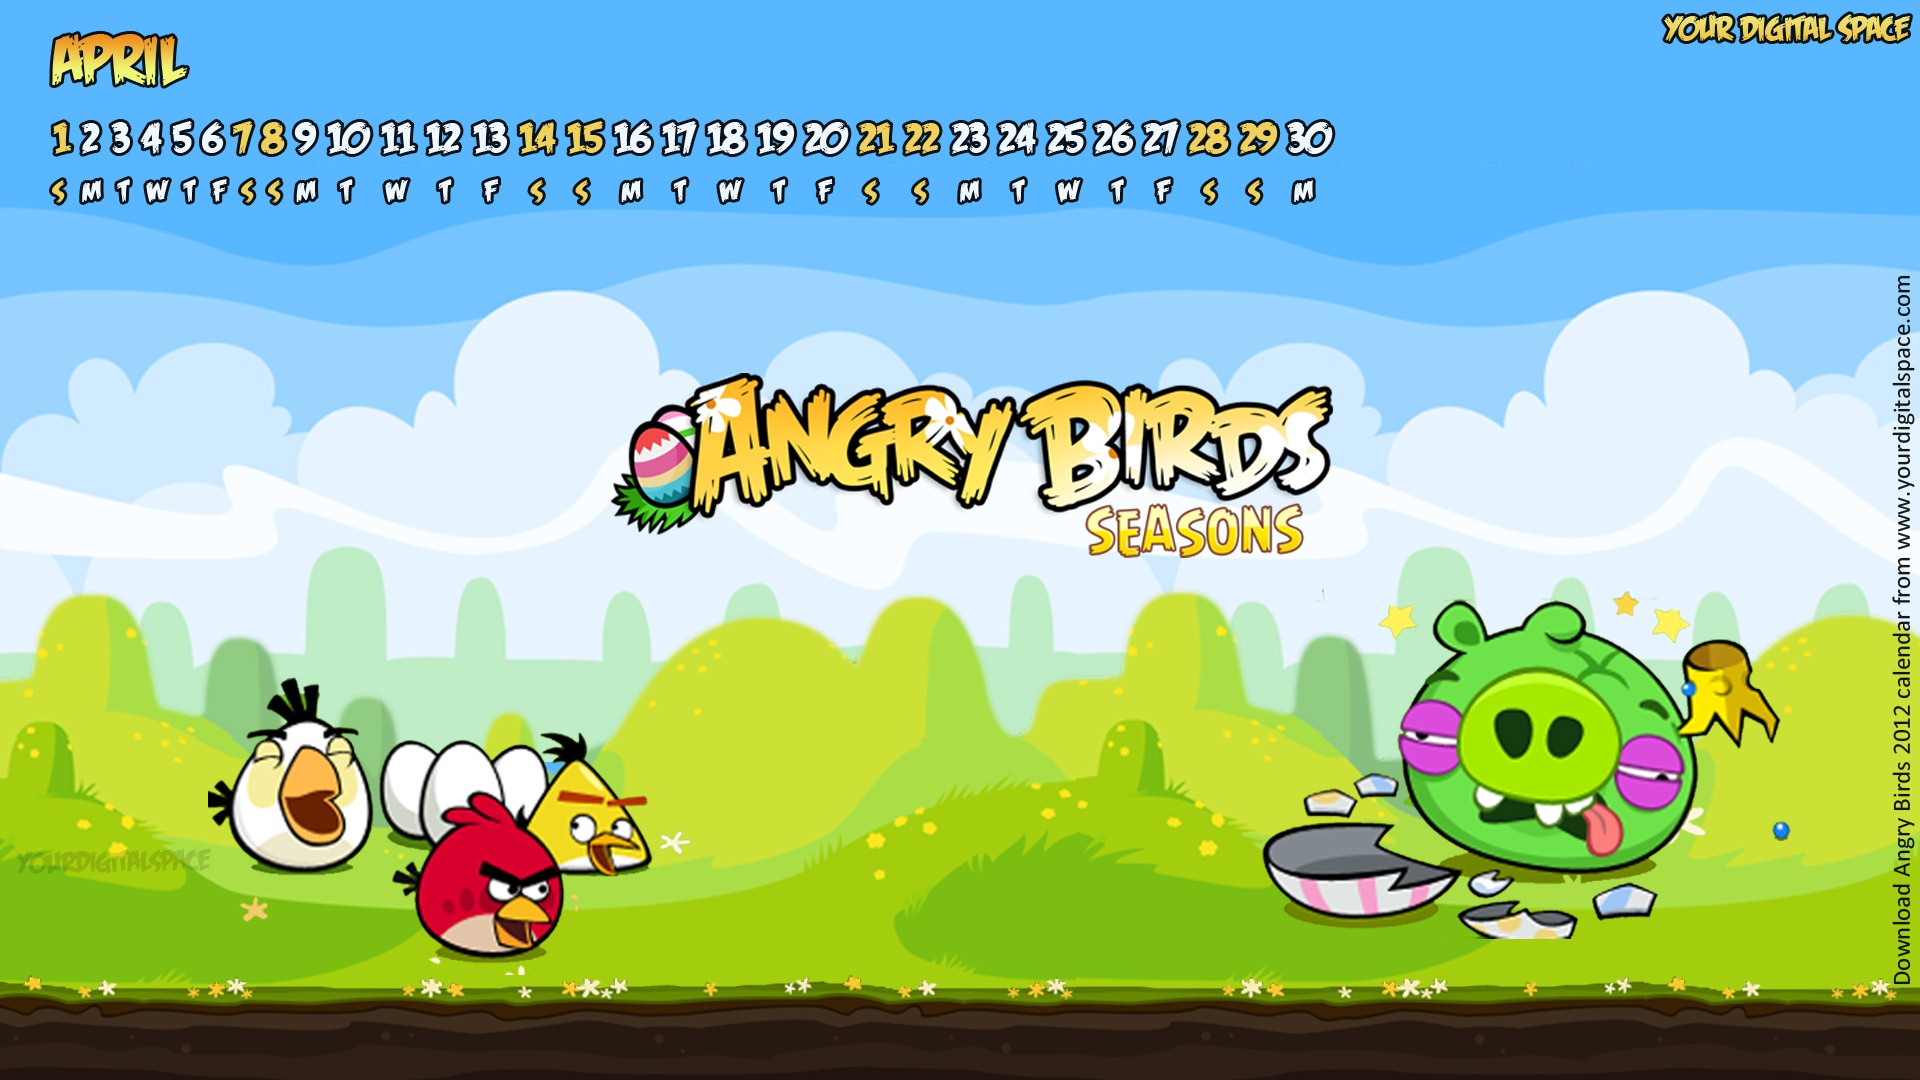 Angry Birds 2012 calendario fondos de escritorio #2 - 1920x1080